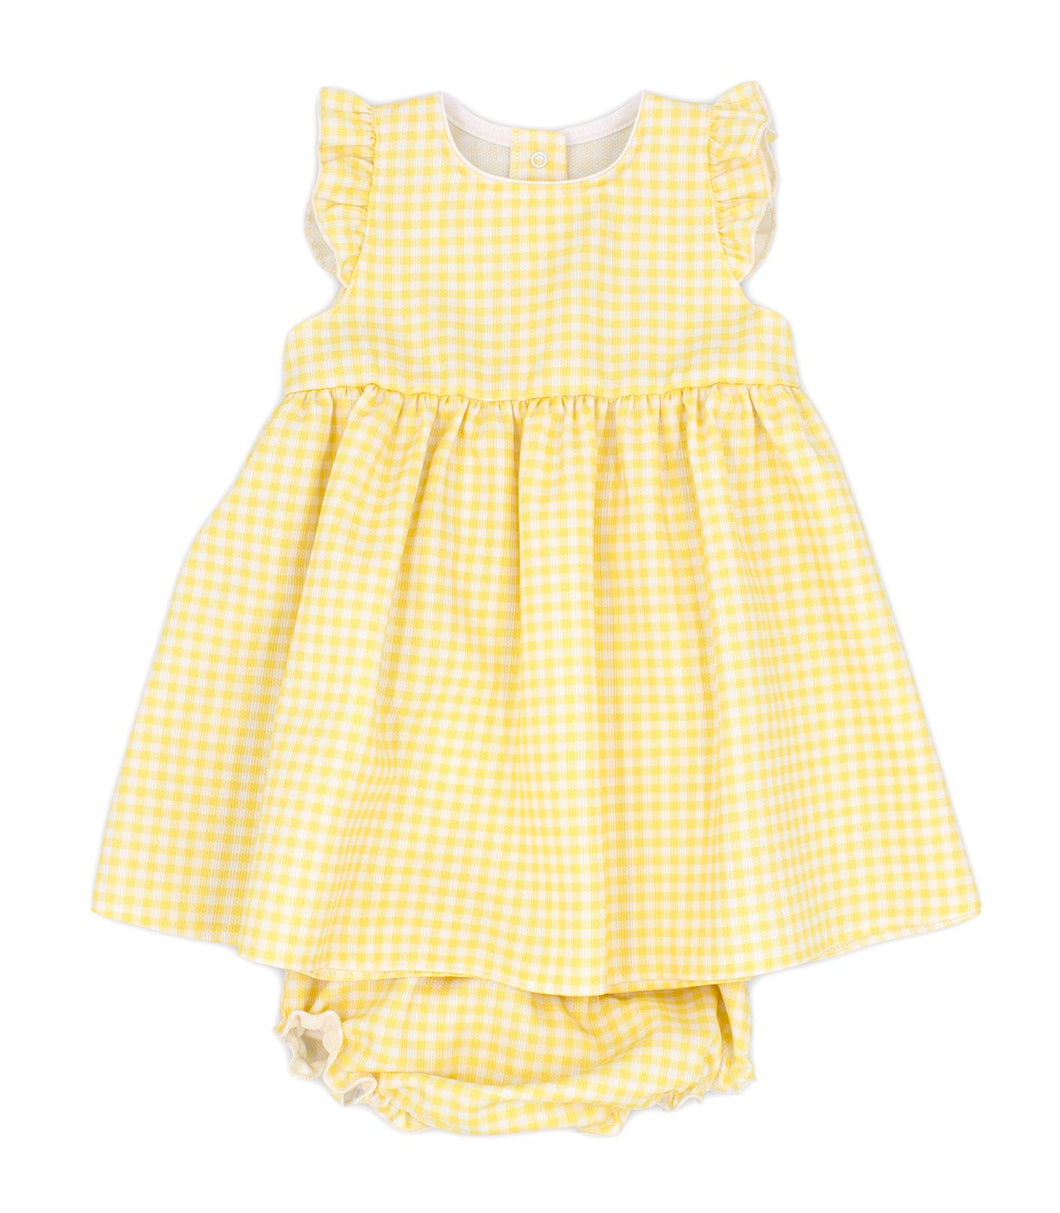 Lemon gingham dress